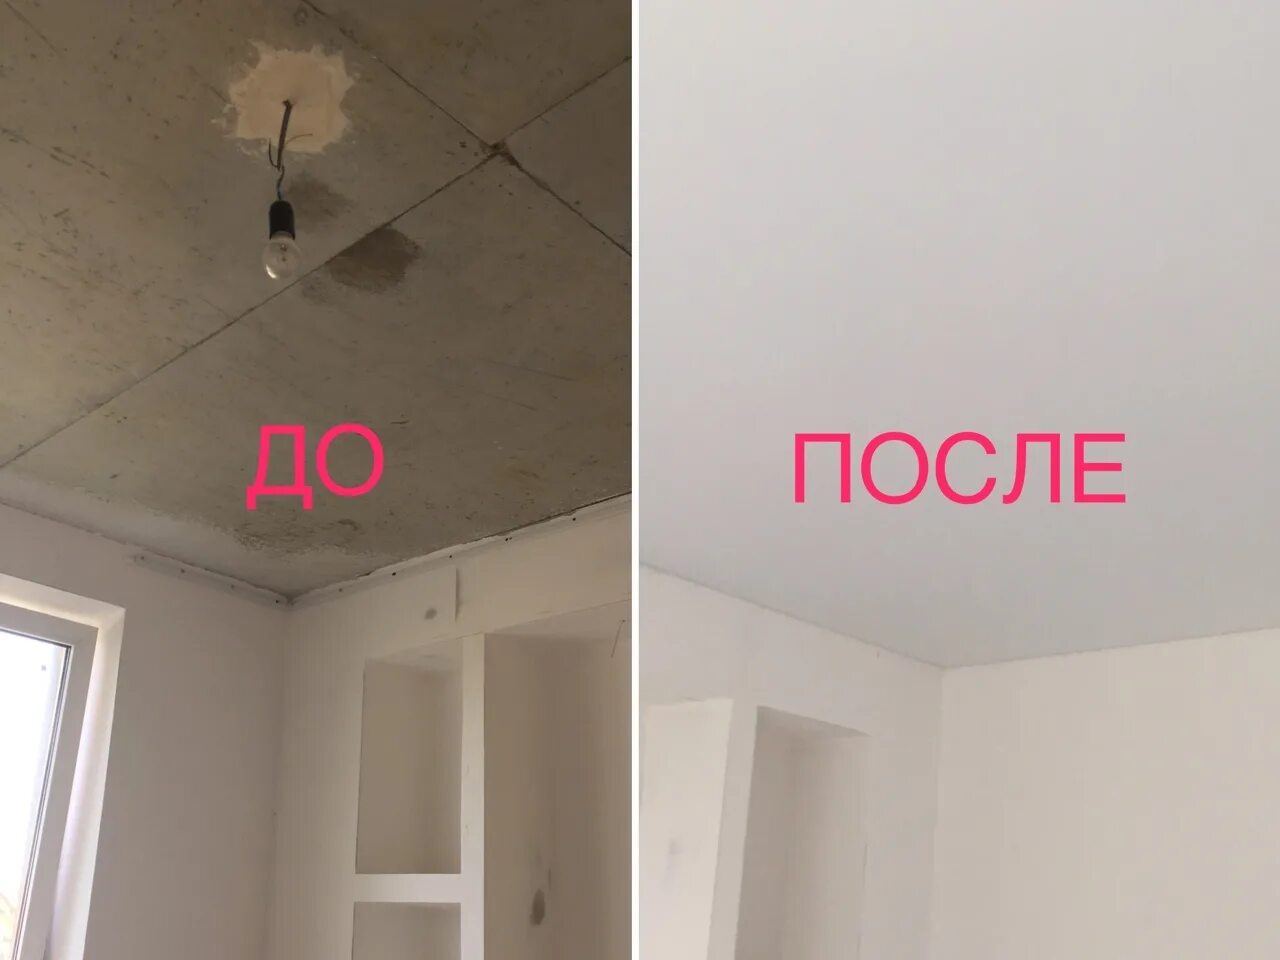 Натяжные потолки до и после. Потолок до и после. До/после комната натяжной потолок. Потолок до и после монтажа. Натяжные потолки после установленной